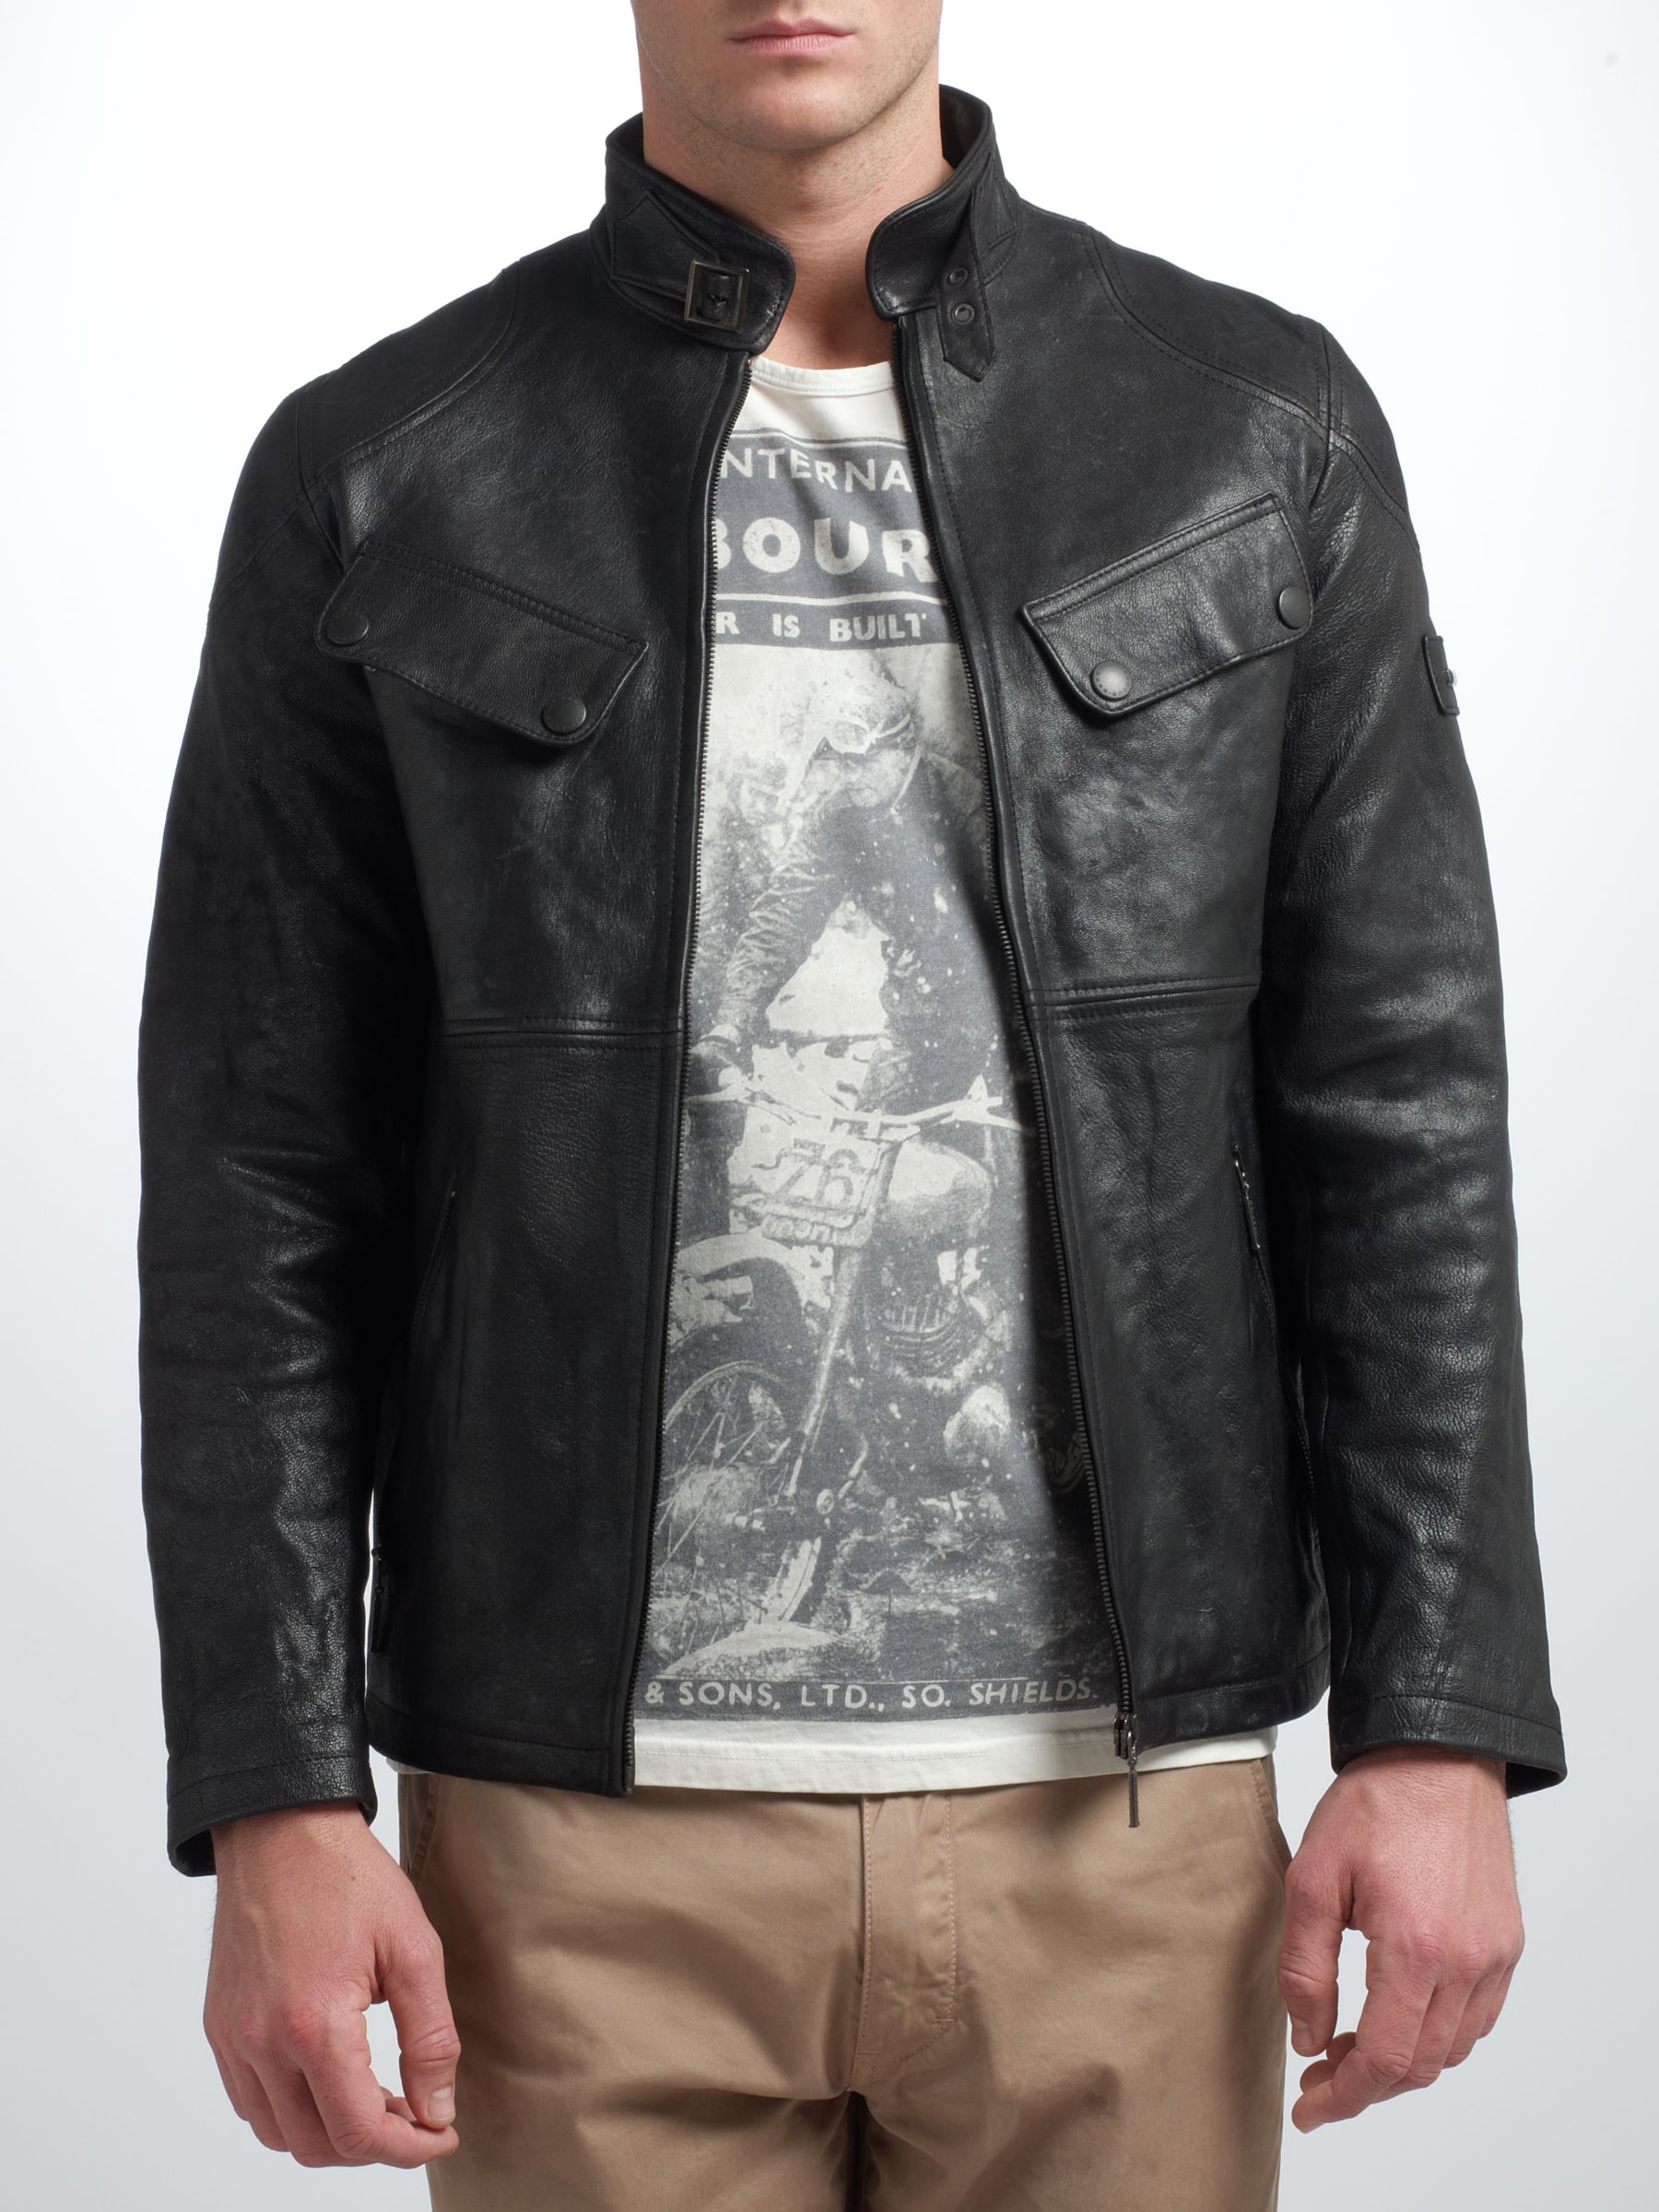 قس barbour leather jacket sale 